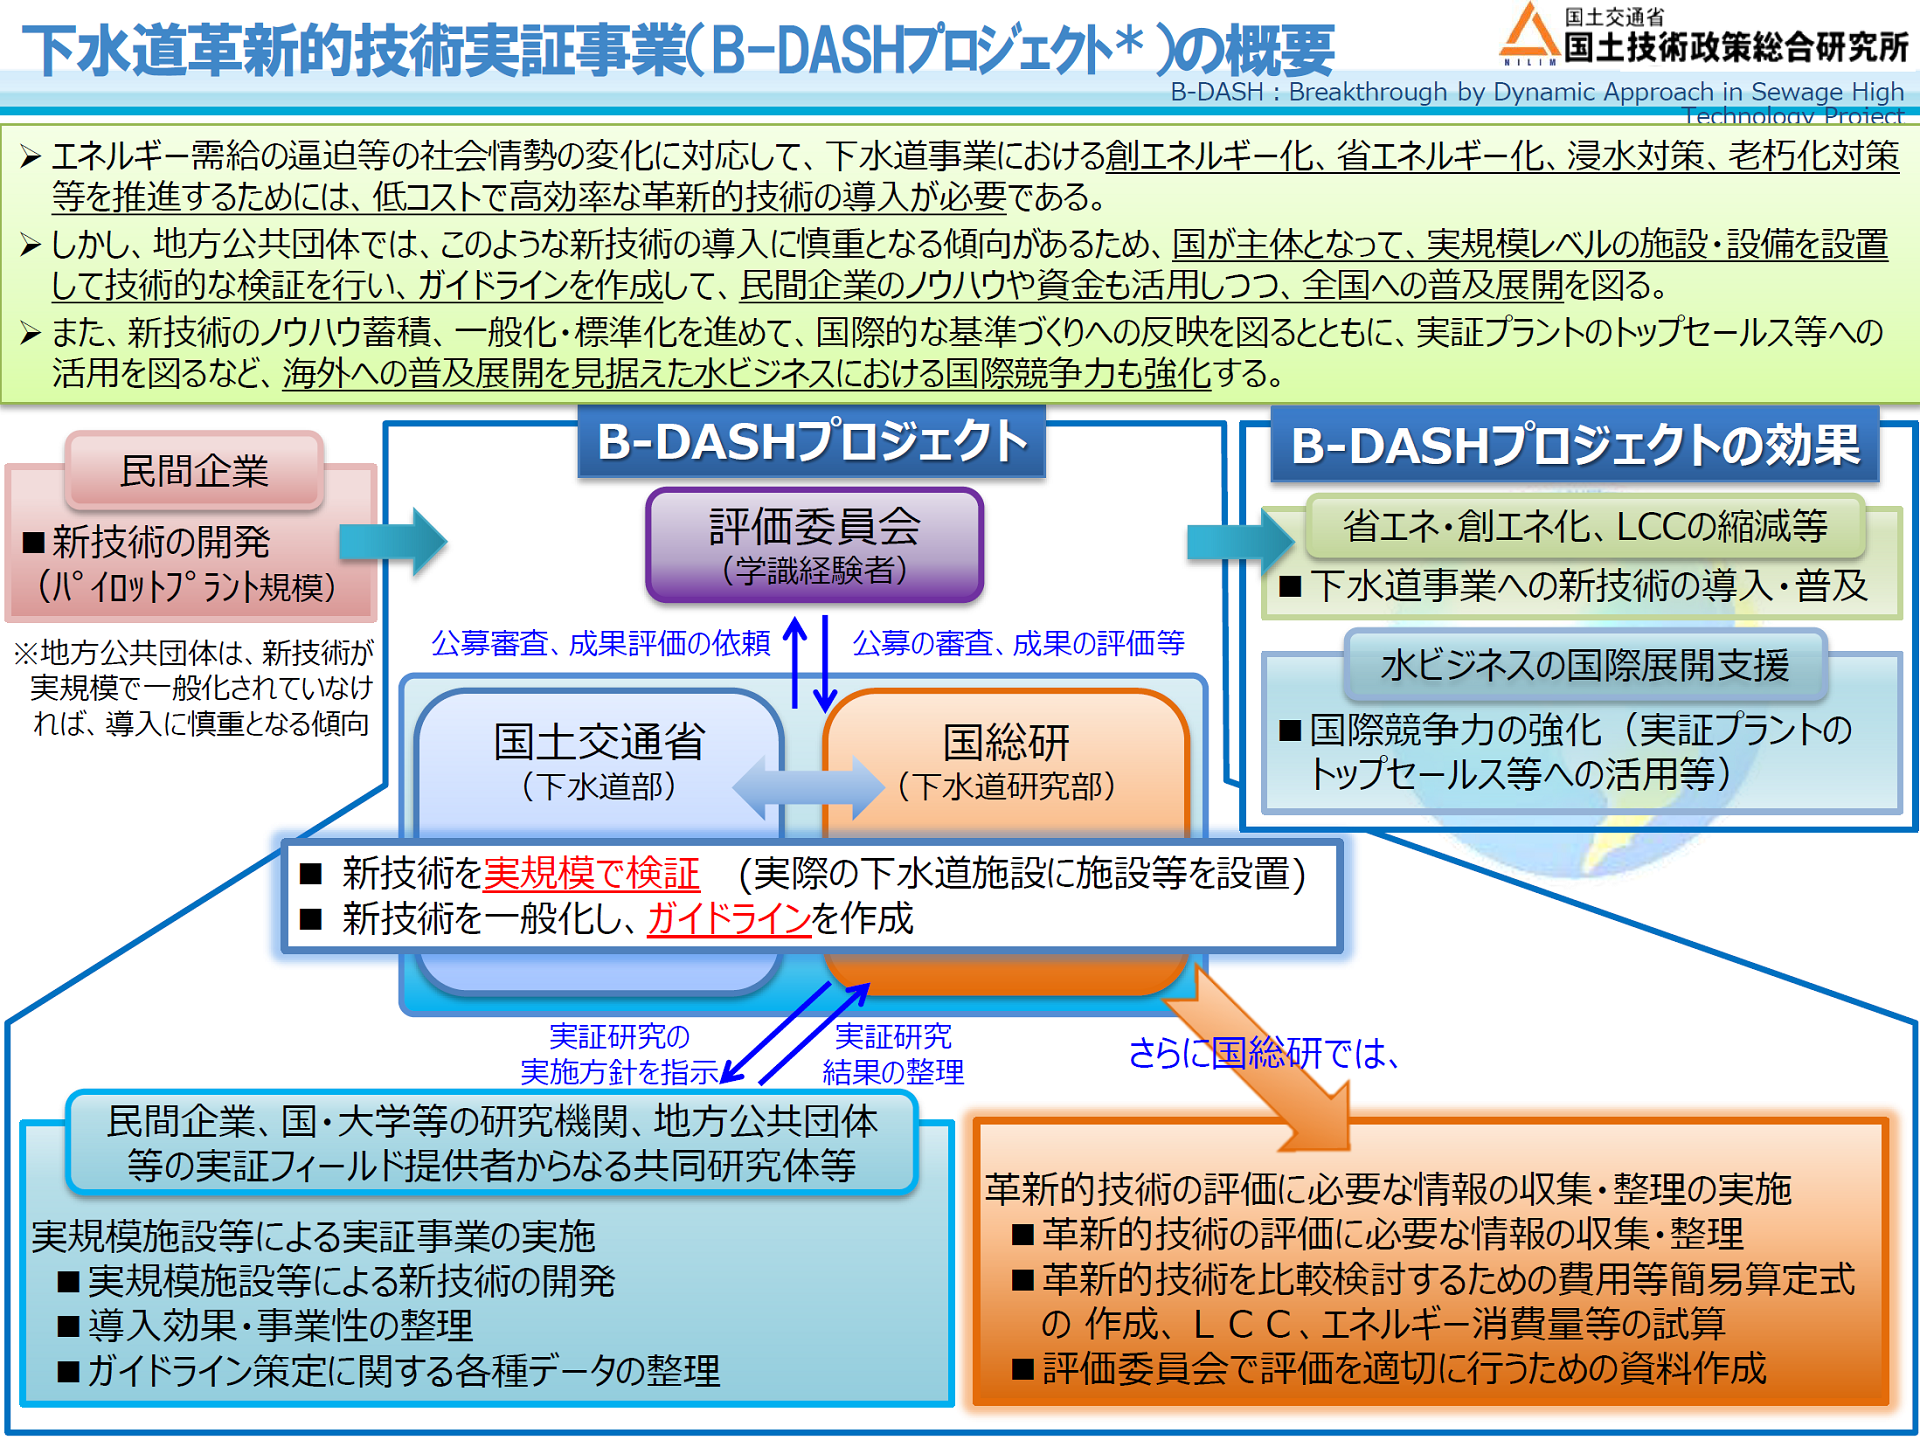 B-DASHプロジェクトの目的と体制